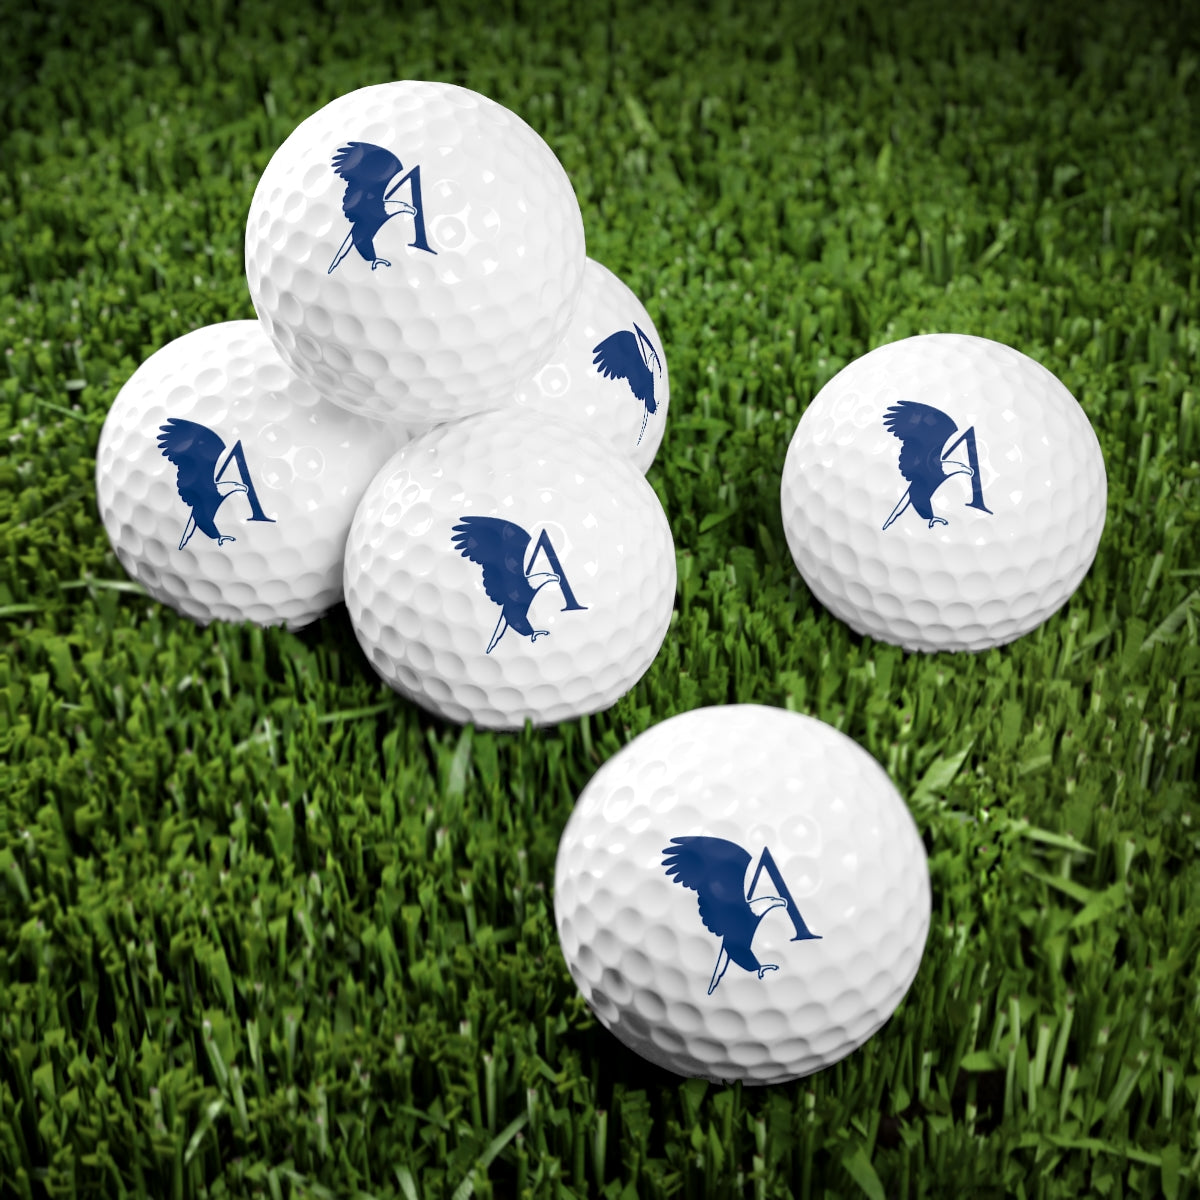 Golf Balls, 6pcs, with EagleA Logo